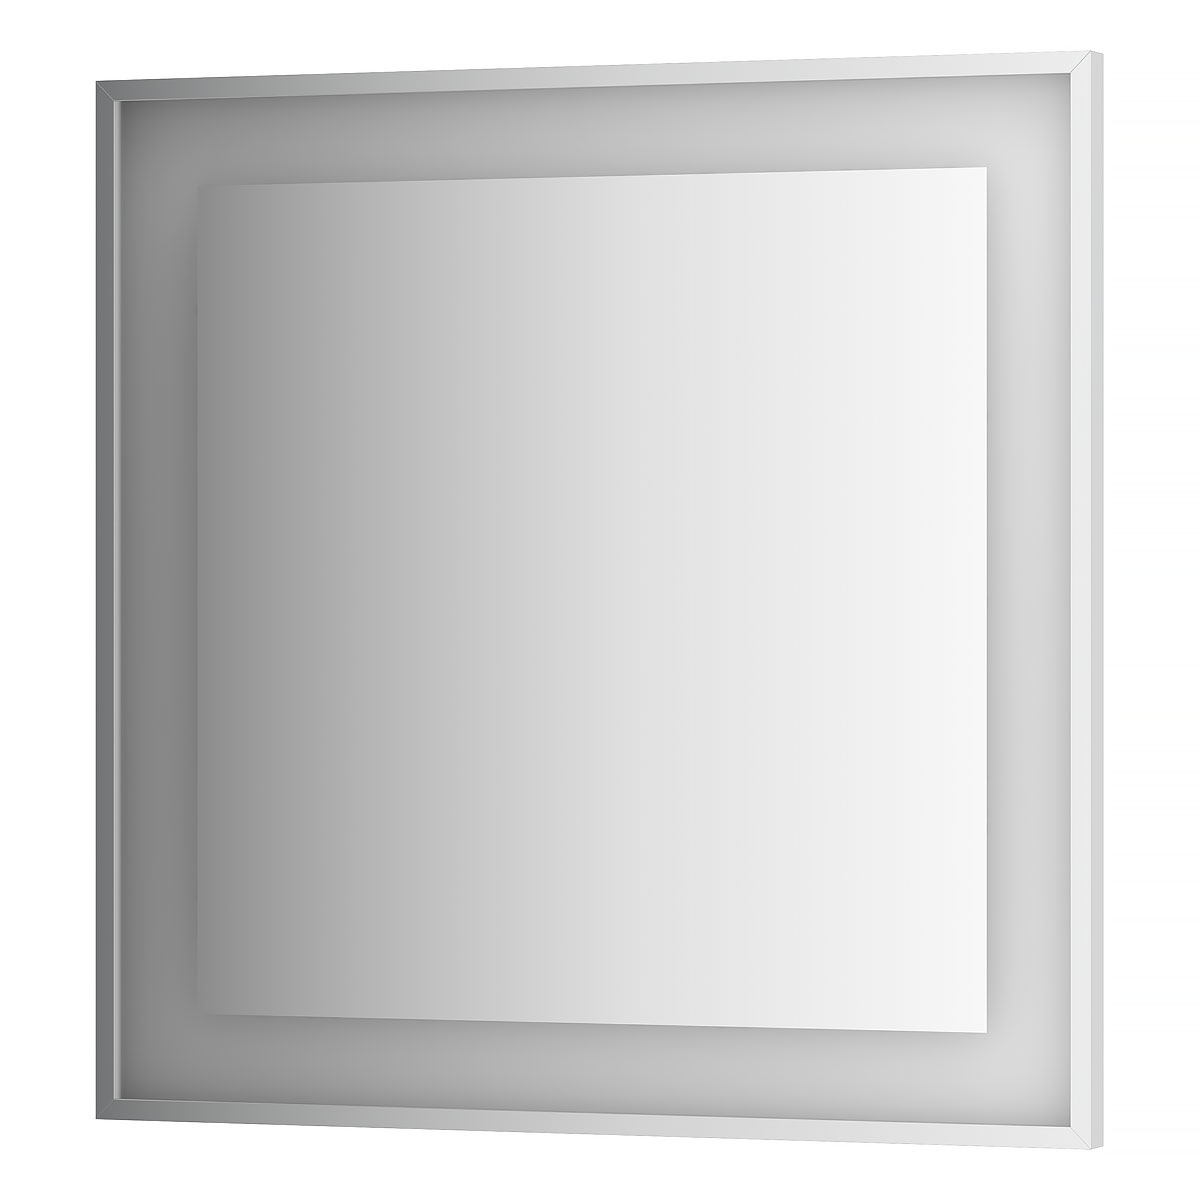 Зеркало в багетной раме со встроенной Led-подсветкой Evoform BY 2211, 90х90 3000 К зеркало evoform в багетной раме 72х72см bx 1021